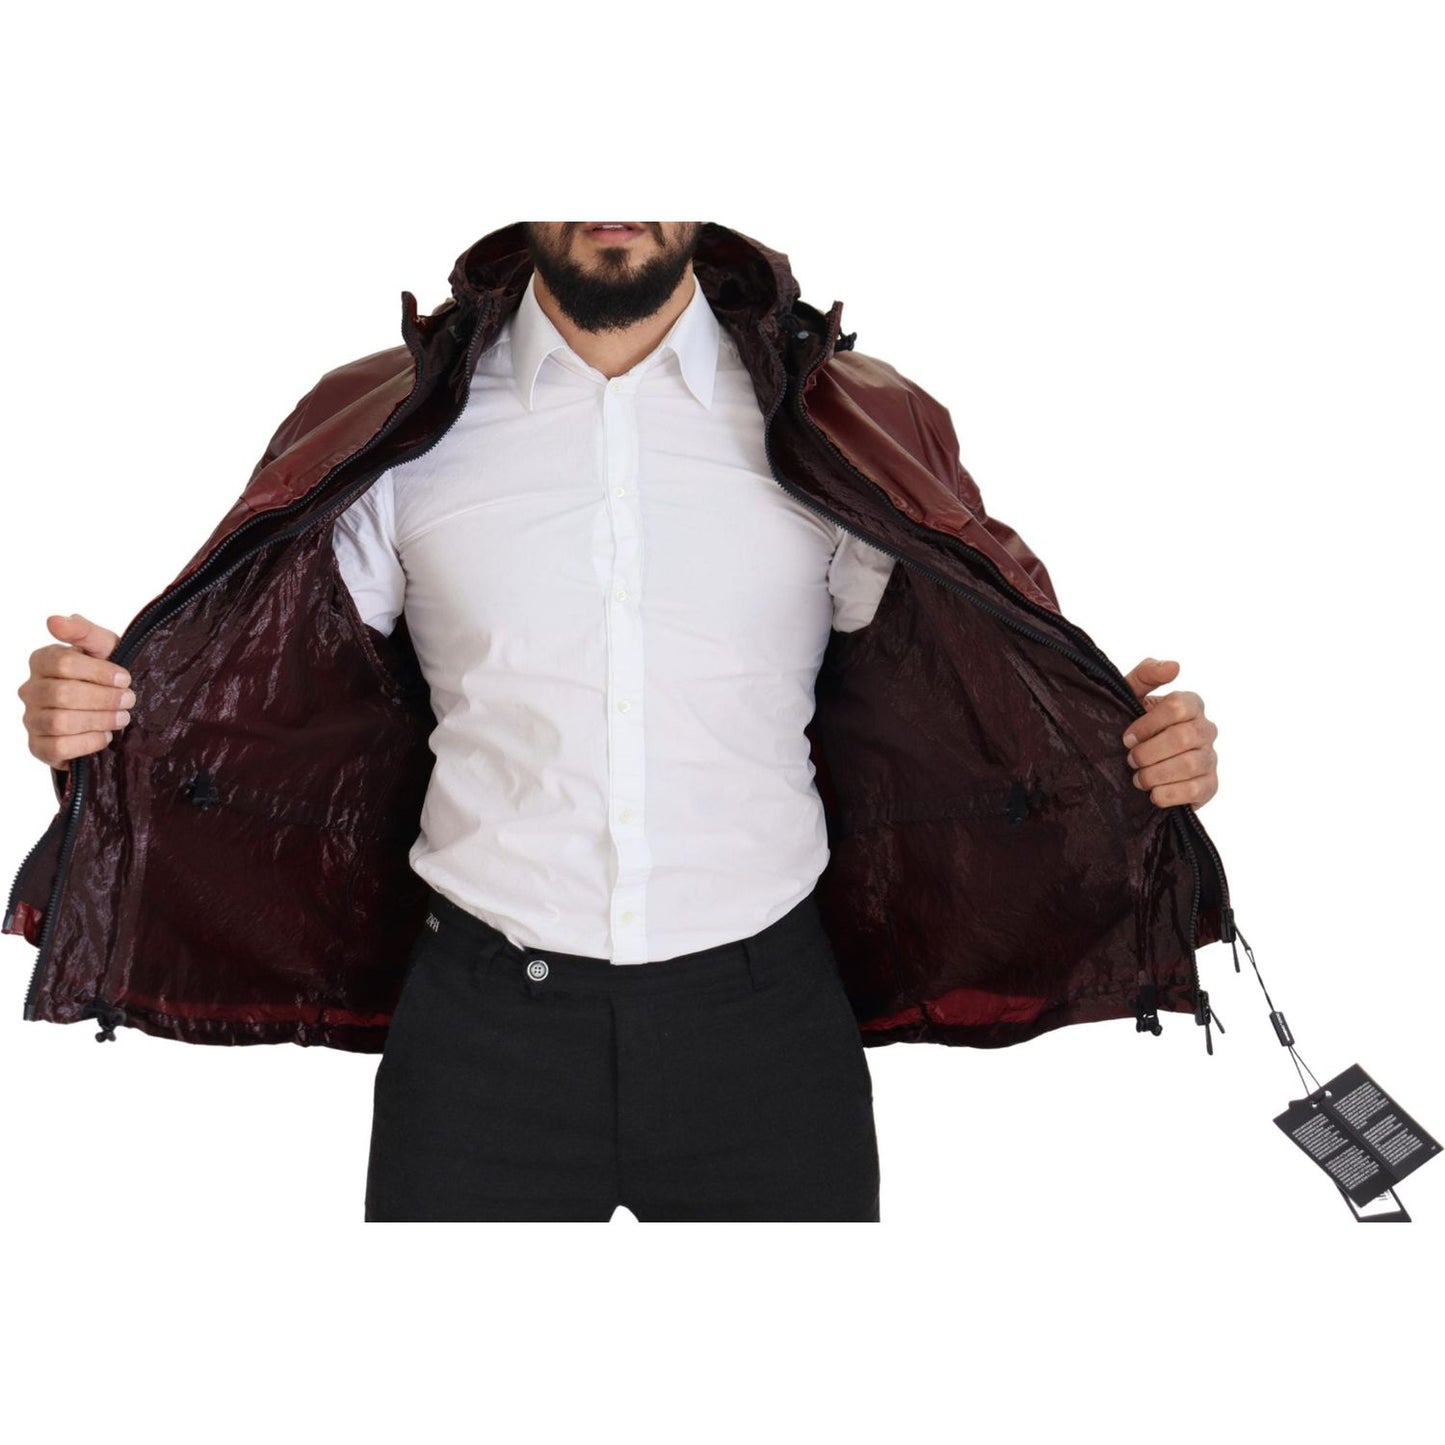 Dolce & Gabbana Elegant Bordeaux Full Zip Hooded Jacket bordeaux-cotton-hooded-full-zip-jacket IMG_8239-scaled-3657c50e-740.jpg